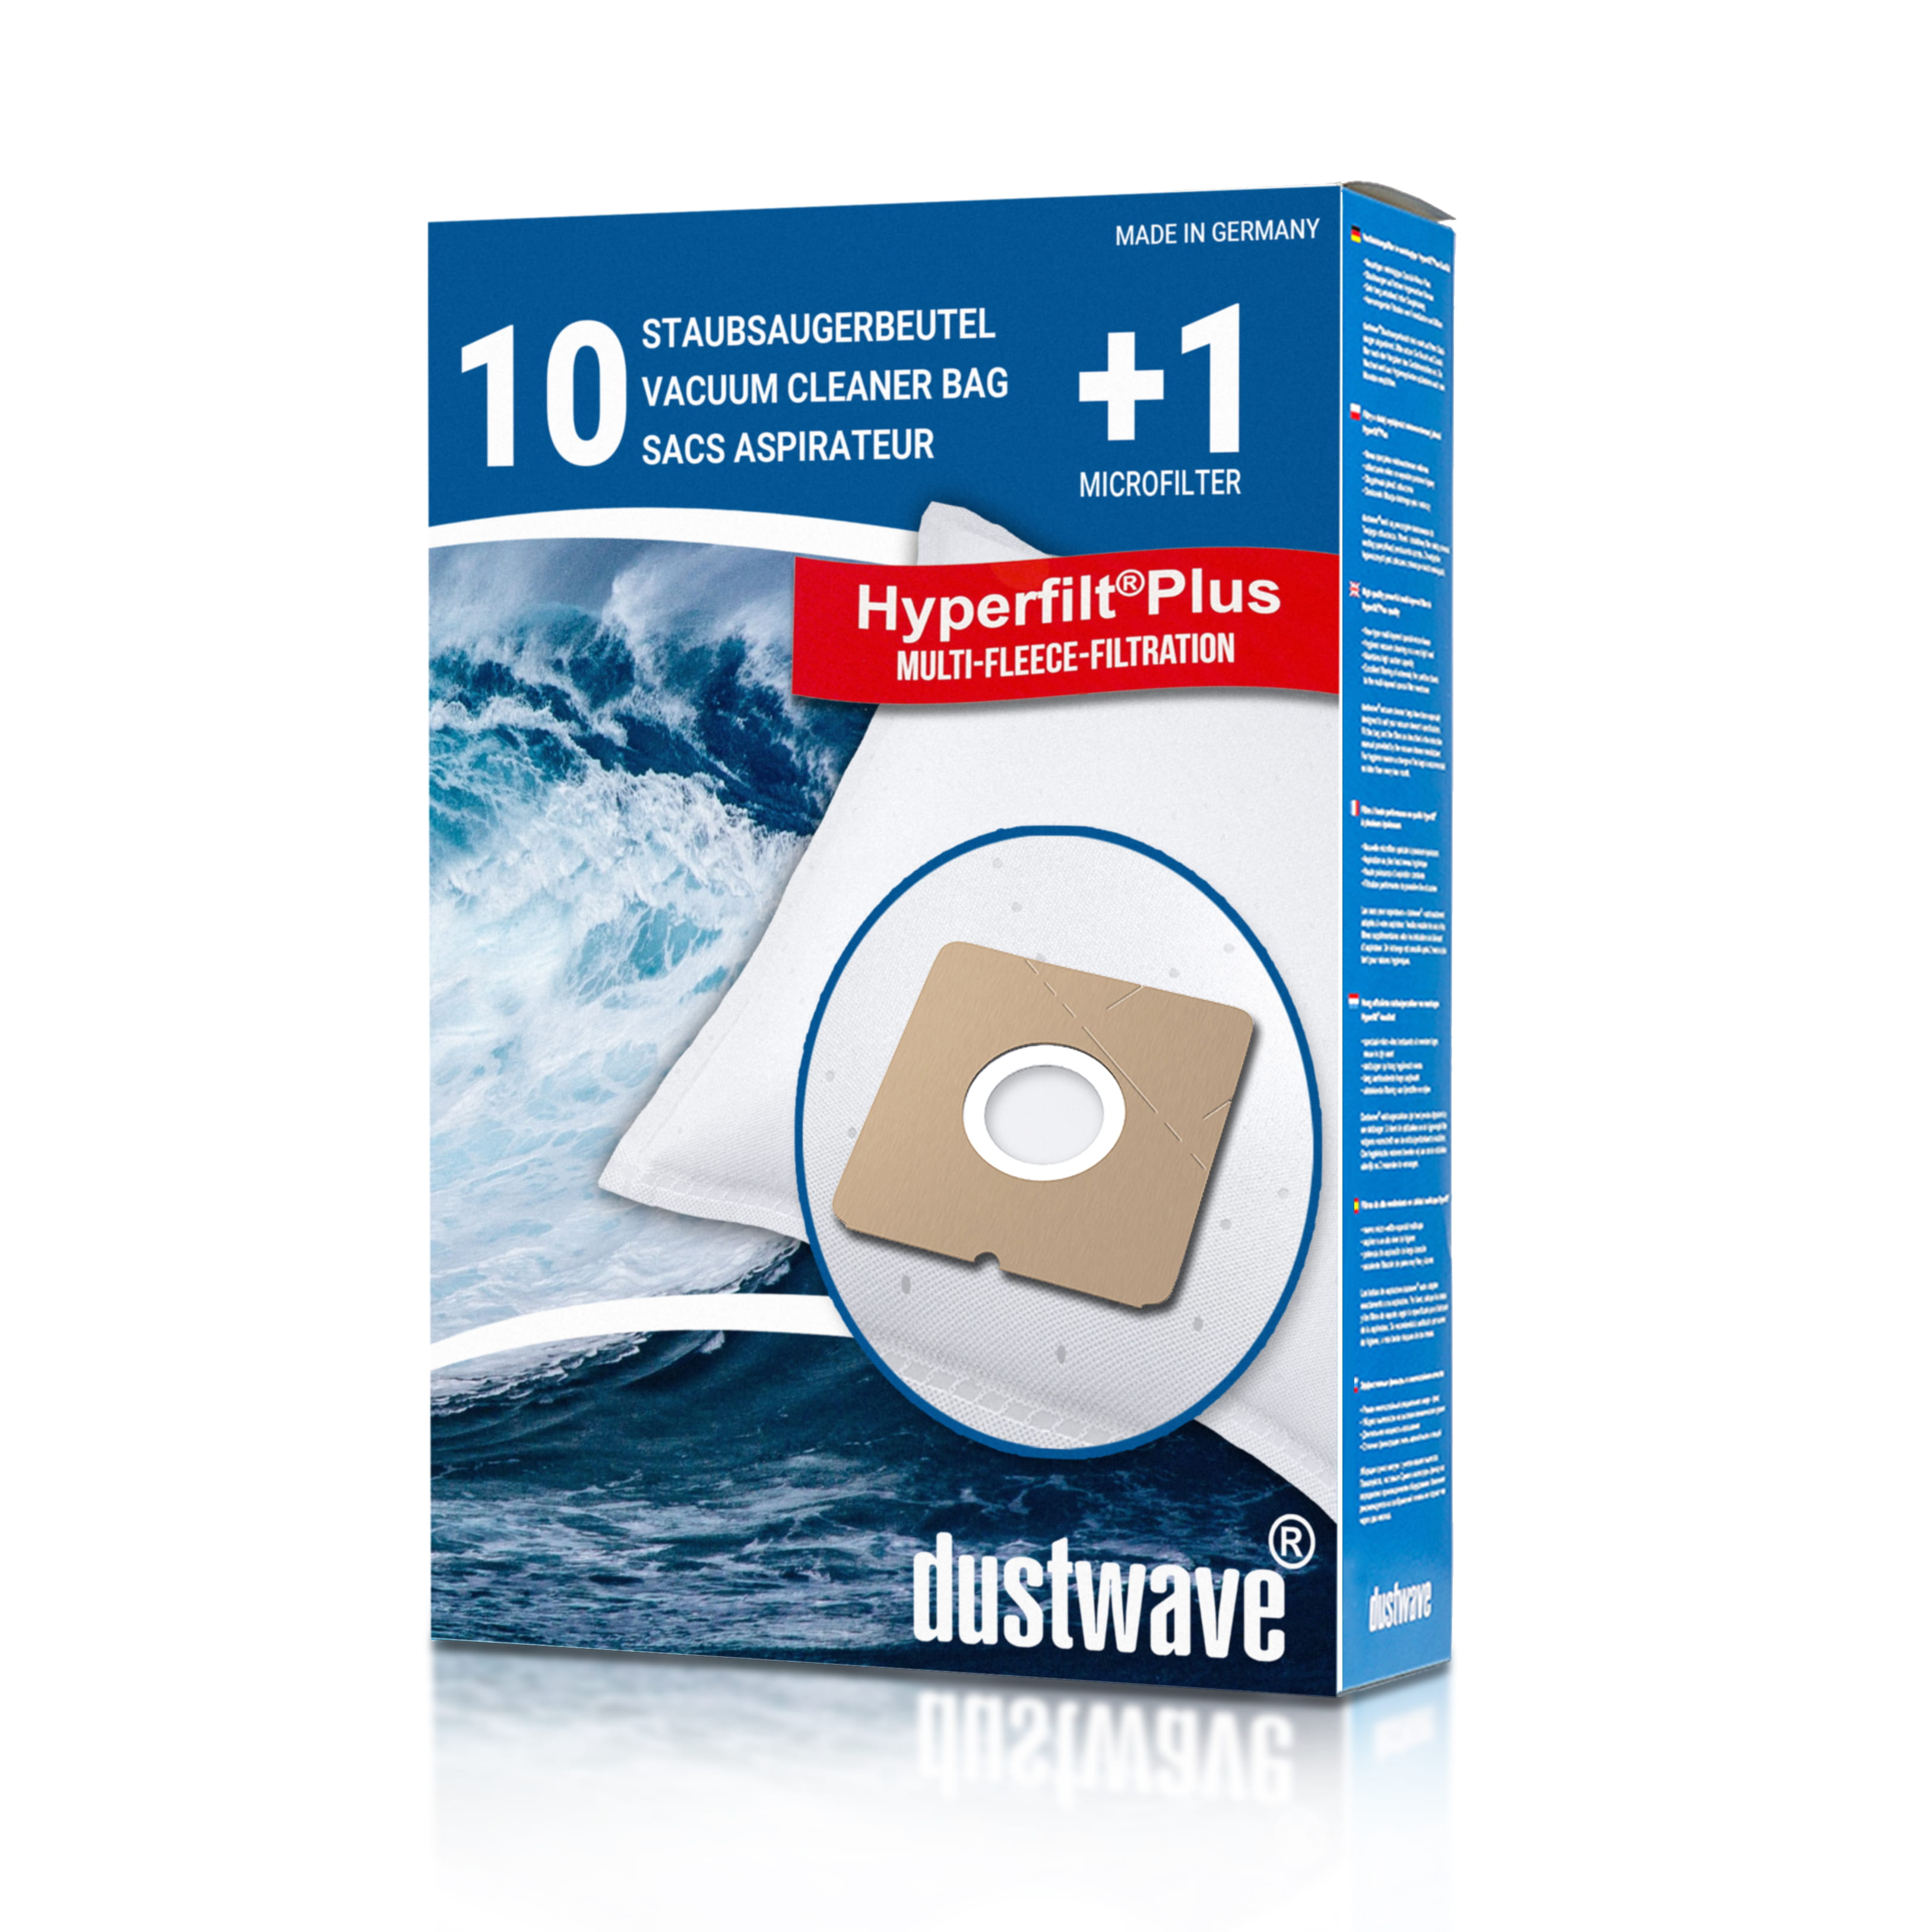 Dustwave® 10 Staubsaugerbeutel für ADMEA YL 110 / YL110 - hocheffizient mit Hygieneverschluss - Made in Germany